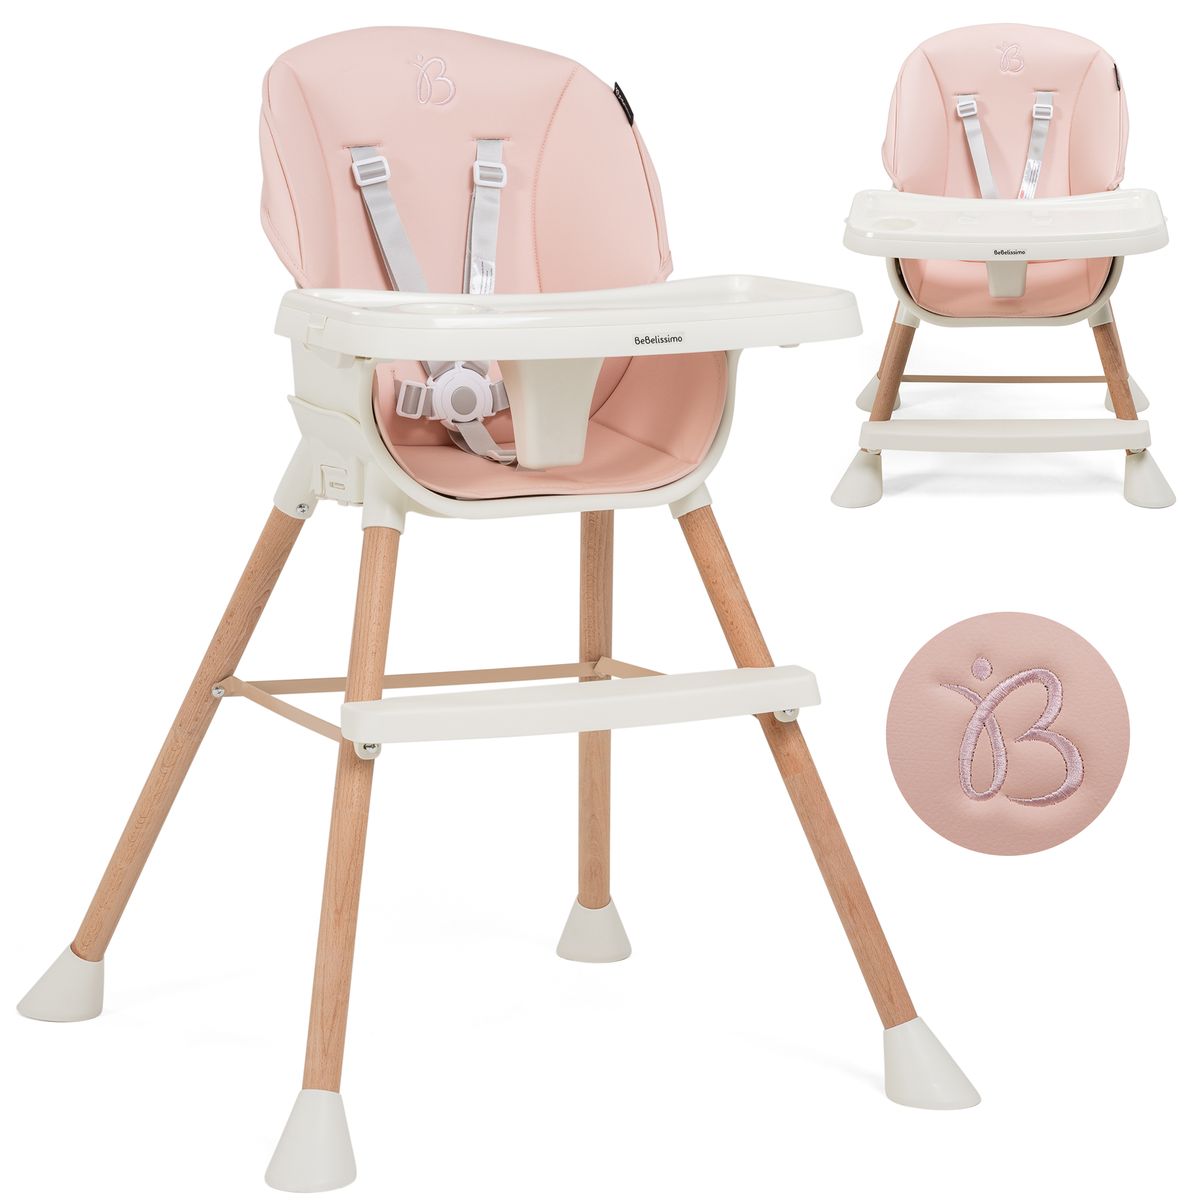 Bebelissimo - chaise haute bébé 5 en 1 - evolutive - réglable - bois de  hêtre - pvc cuir - rose - bz -511 - new design Lorelli